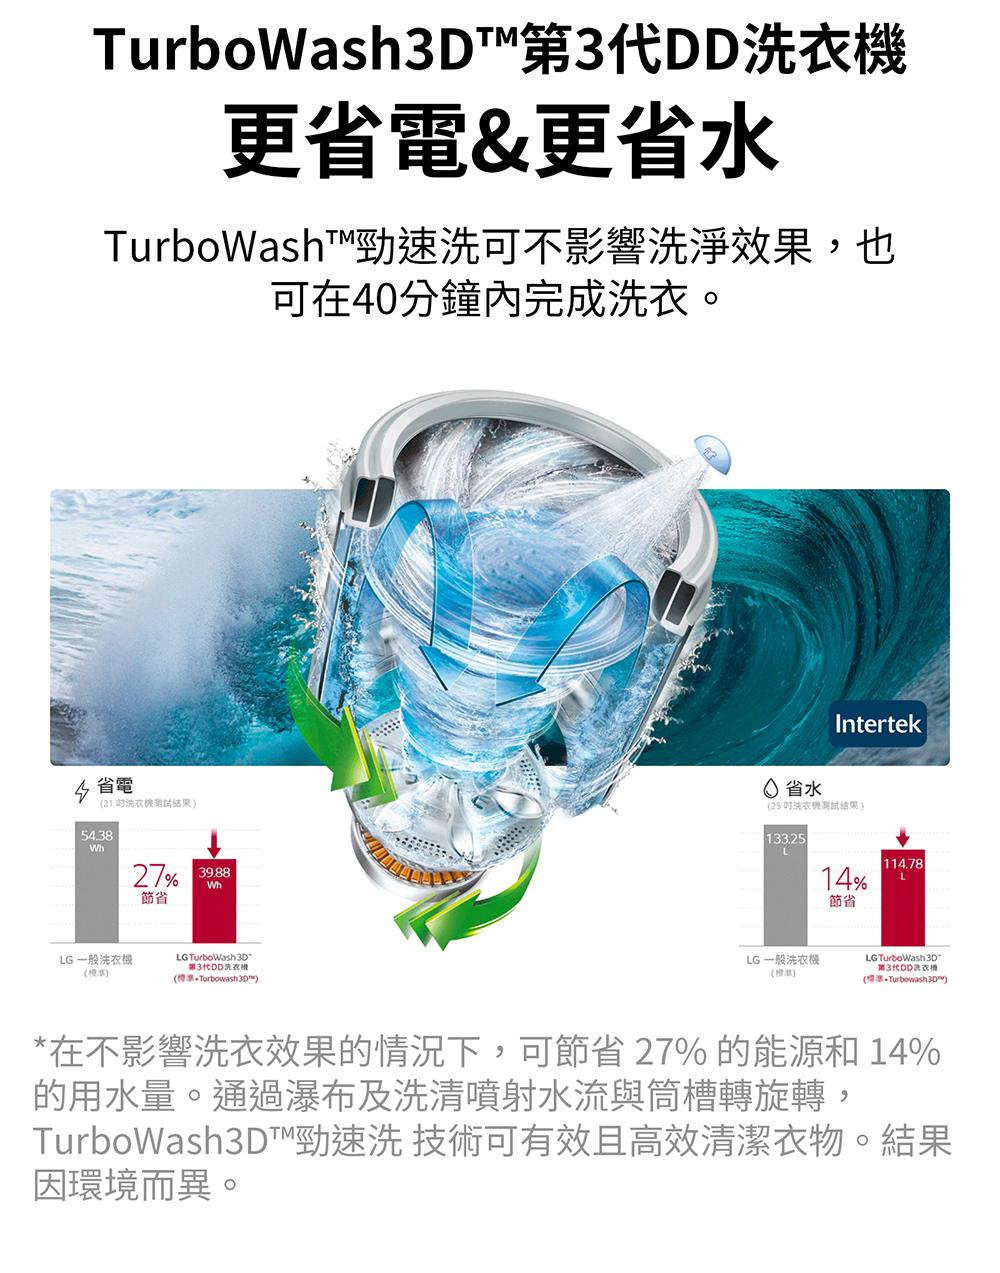 TurboWash3D勁速洗 技術可有效且高效清潔衣物。結果